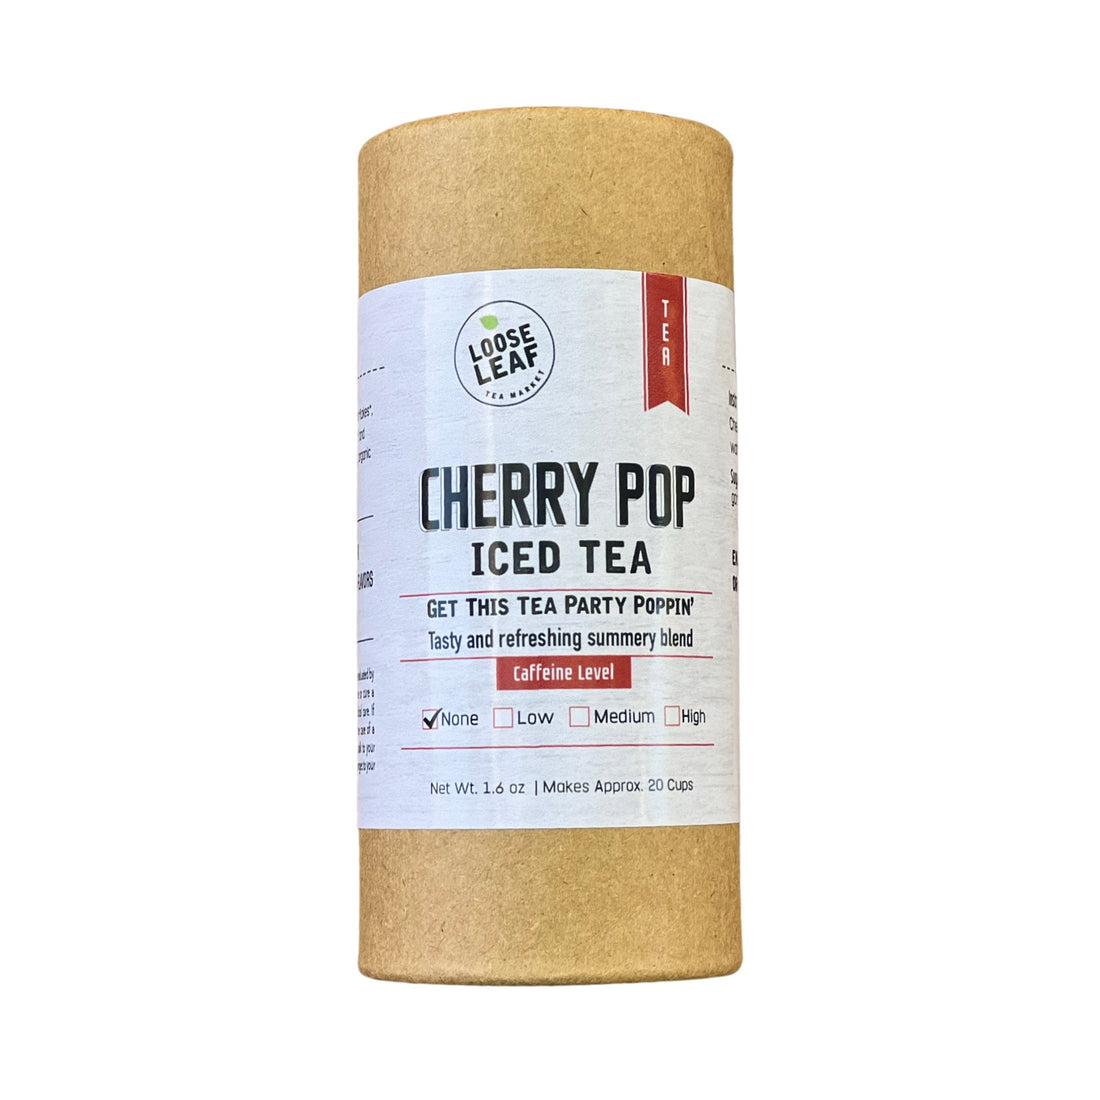 Cherry Pop Iced Tea - Loose Leaf Tea Market